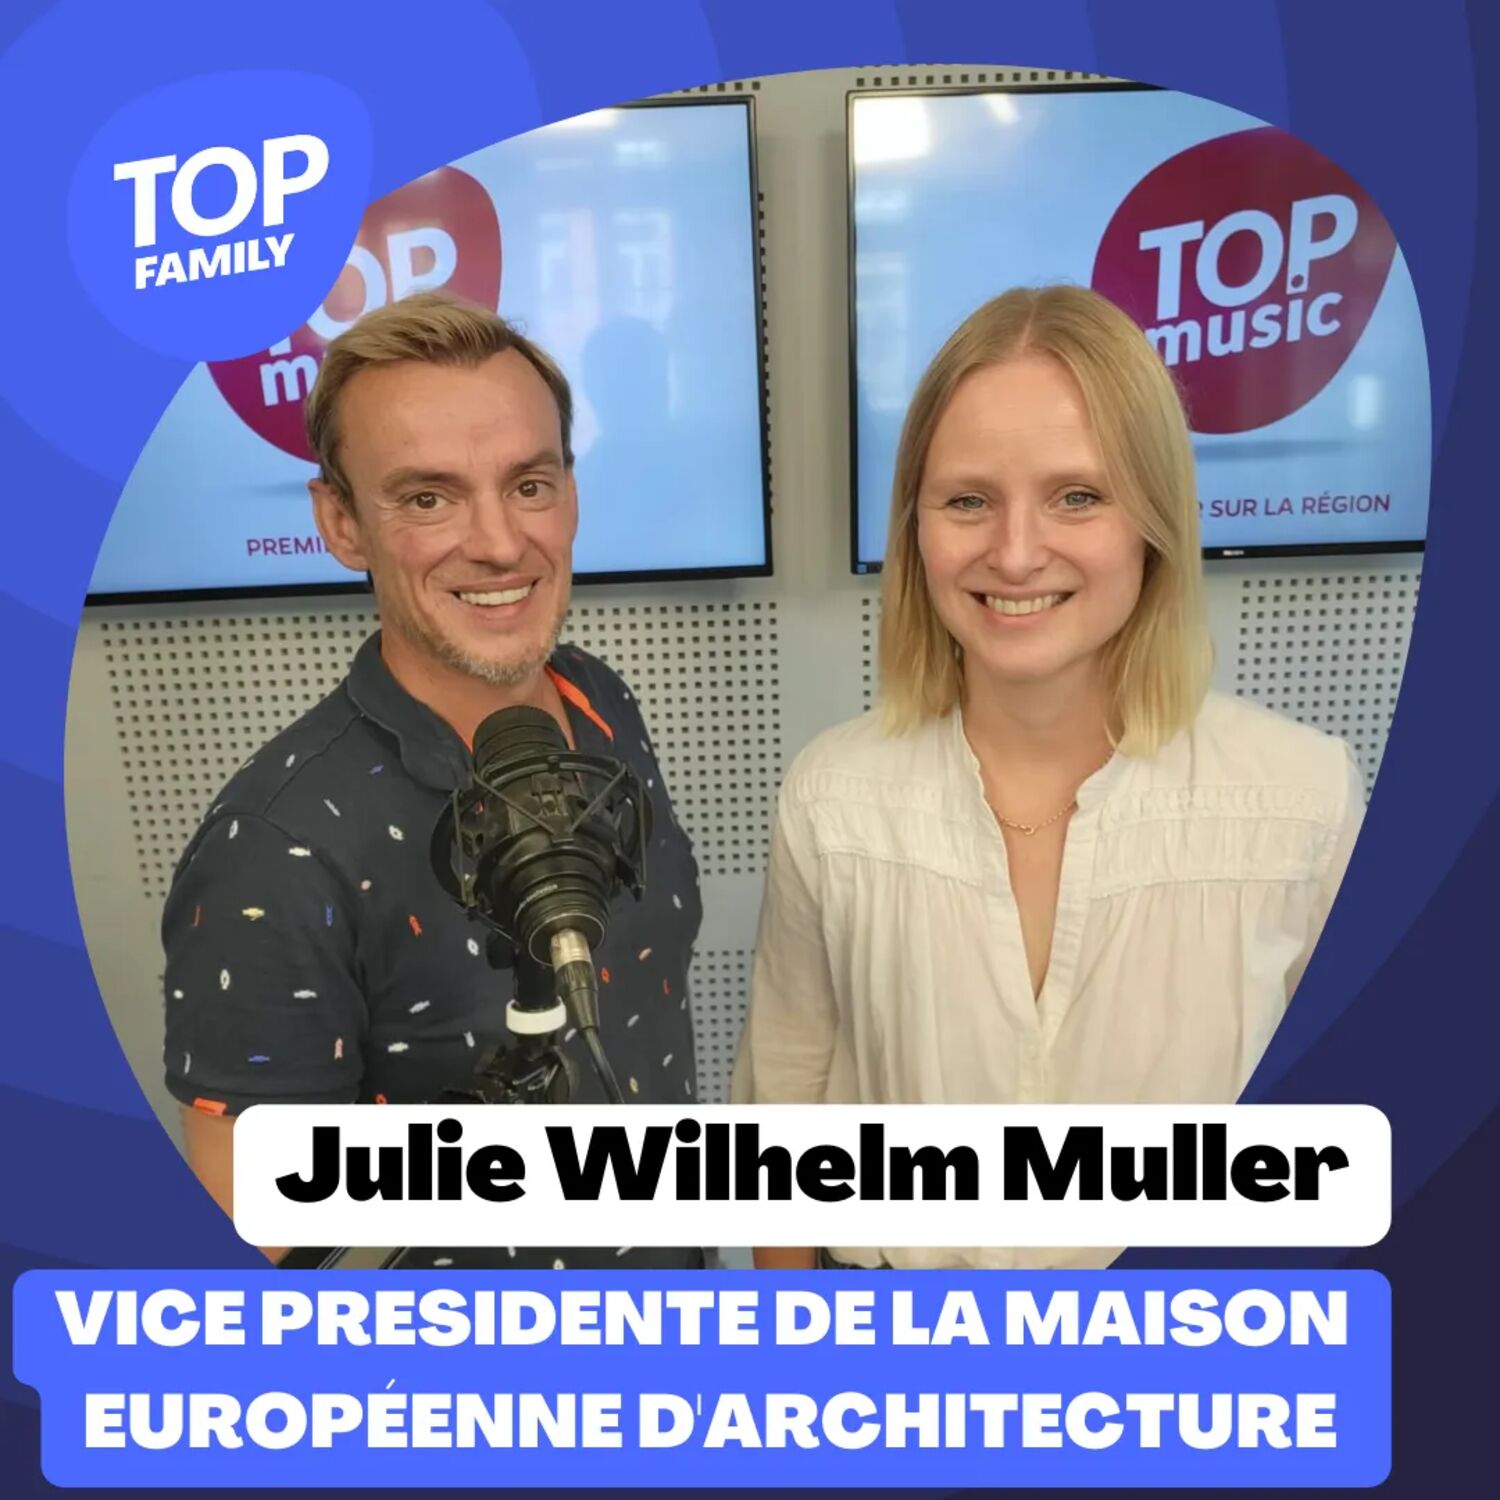 Top Family - Les journées d'architecture avec Julie Wilhelm Muller,...